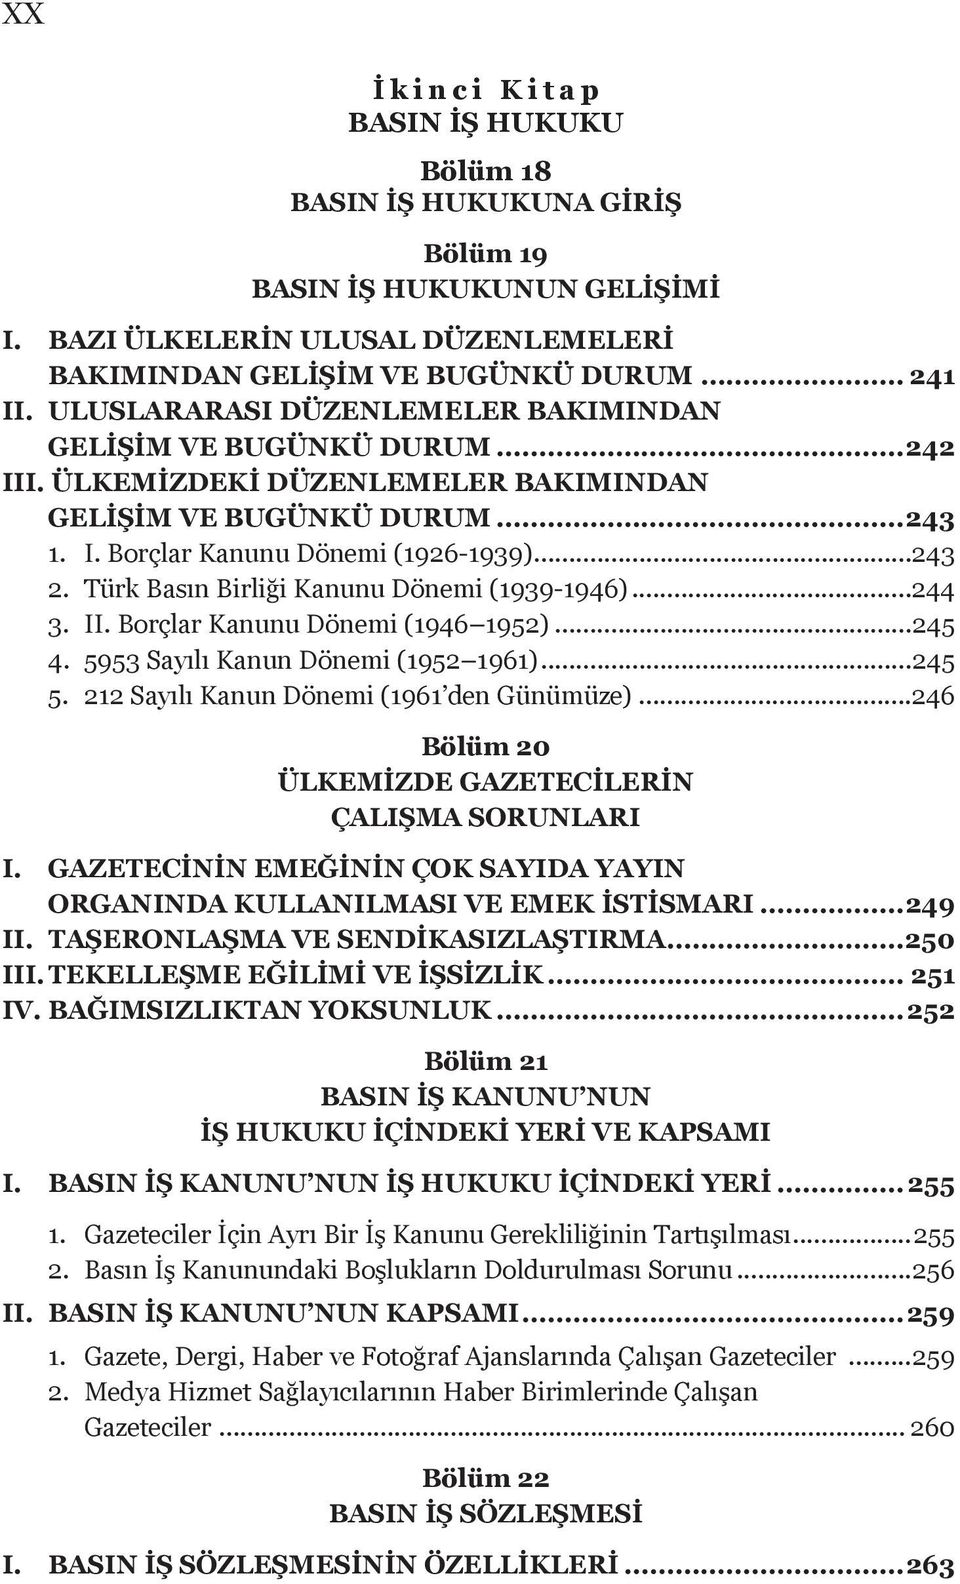 Türk Basın Birliği Kanunu Dönemi (1939-1946)...244 3. II. Borçlar Kanunu Dönemi (1946 1952)...245 4. 5953 Sayılı Kanun Dönemi (1952 1961)...245 5. 212 Sayılı Kanun Dönemi (1961 den Günümüze).